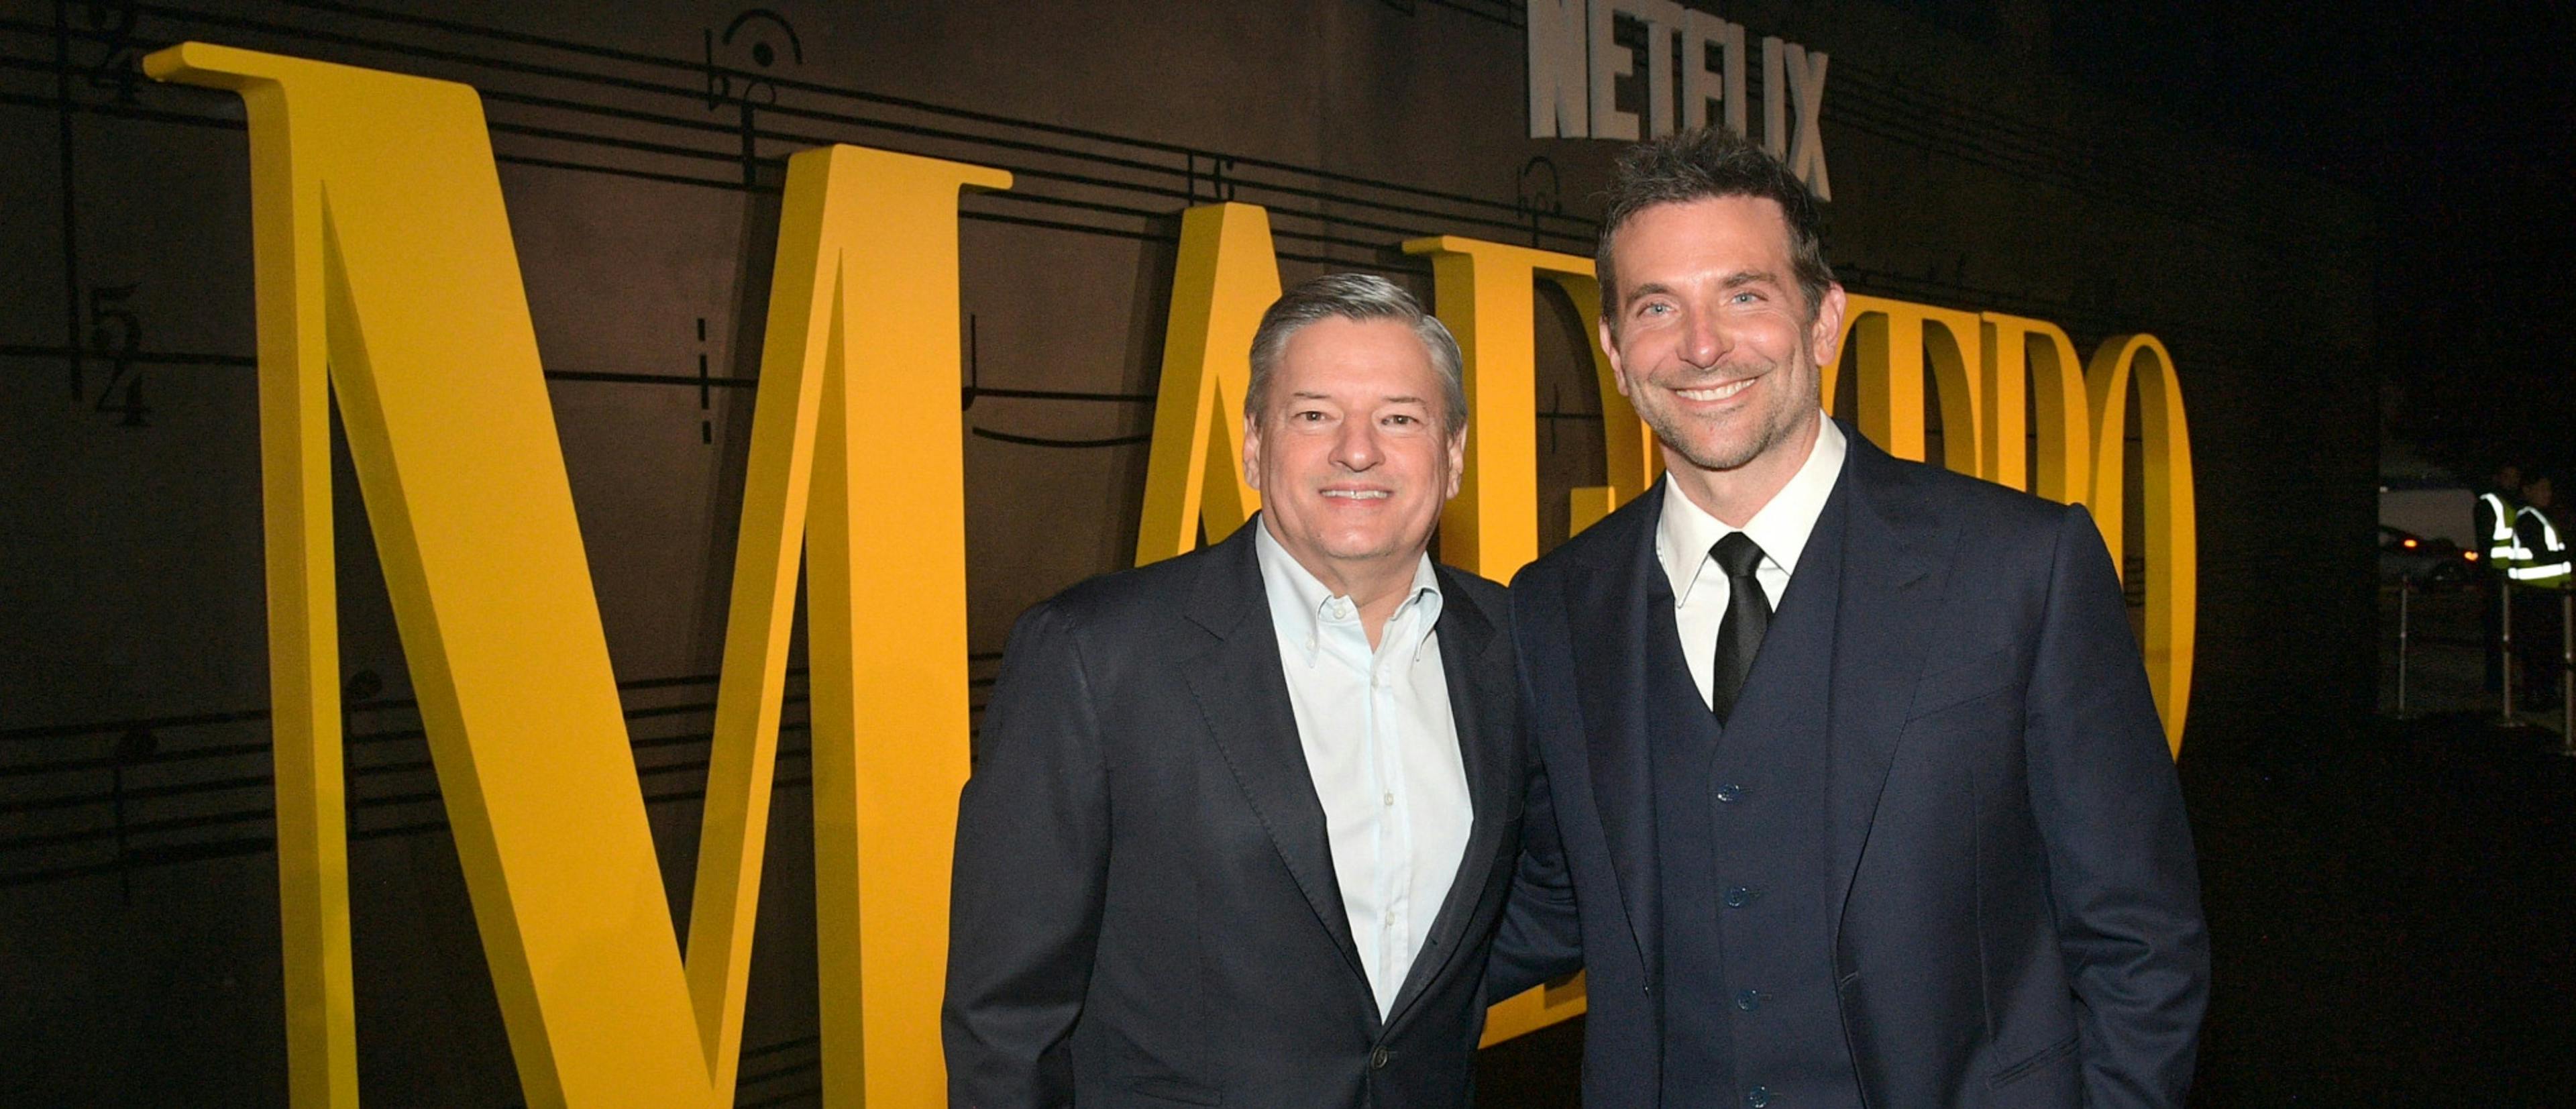 El co-Ceo de Netflix Ted Sarandos junto al actor y director Bradley Cooper durante la presentación de 'Maestro¡ en Los Angeles